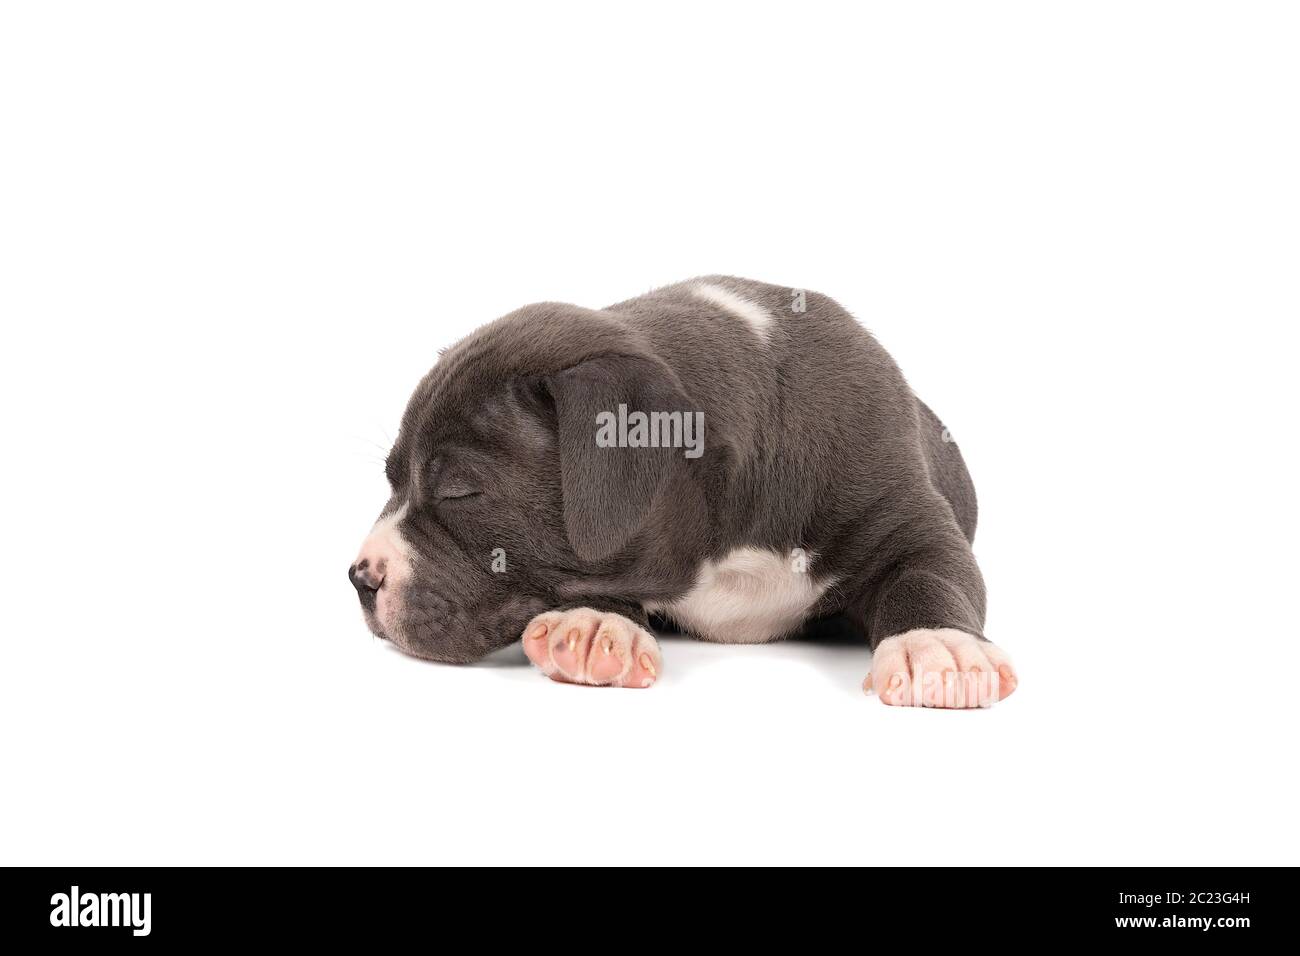 Un pup américain de taureaux ou de Bulldog, à fourrure bleue et blanche couché en terre dormant, isolé sur un fond blanc Banque D'Images